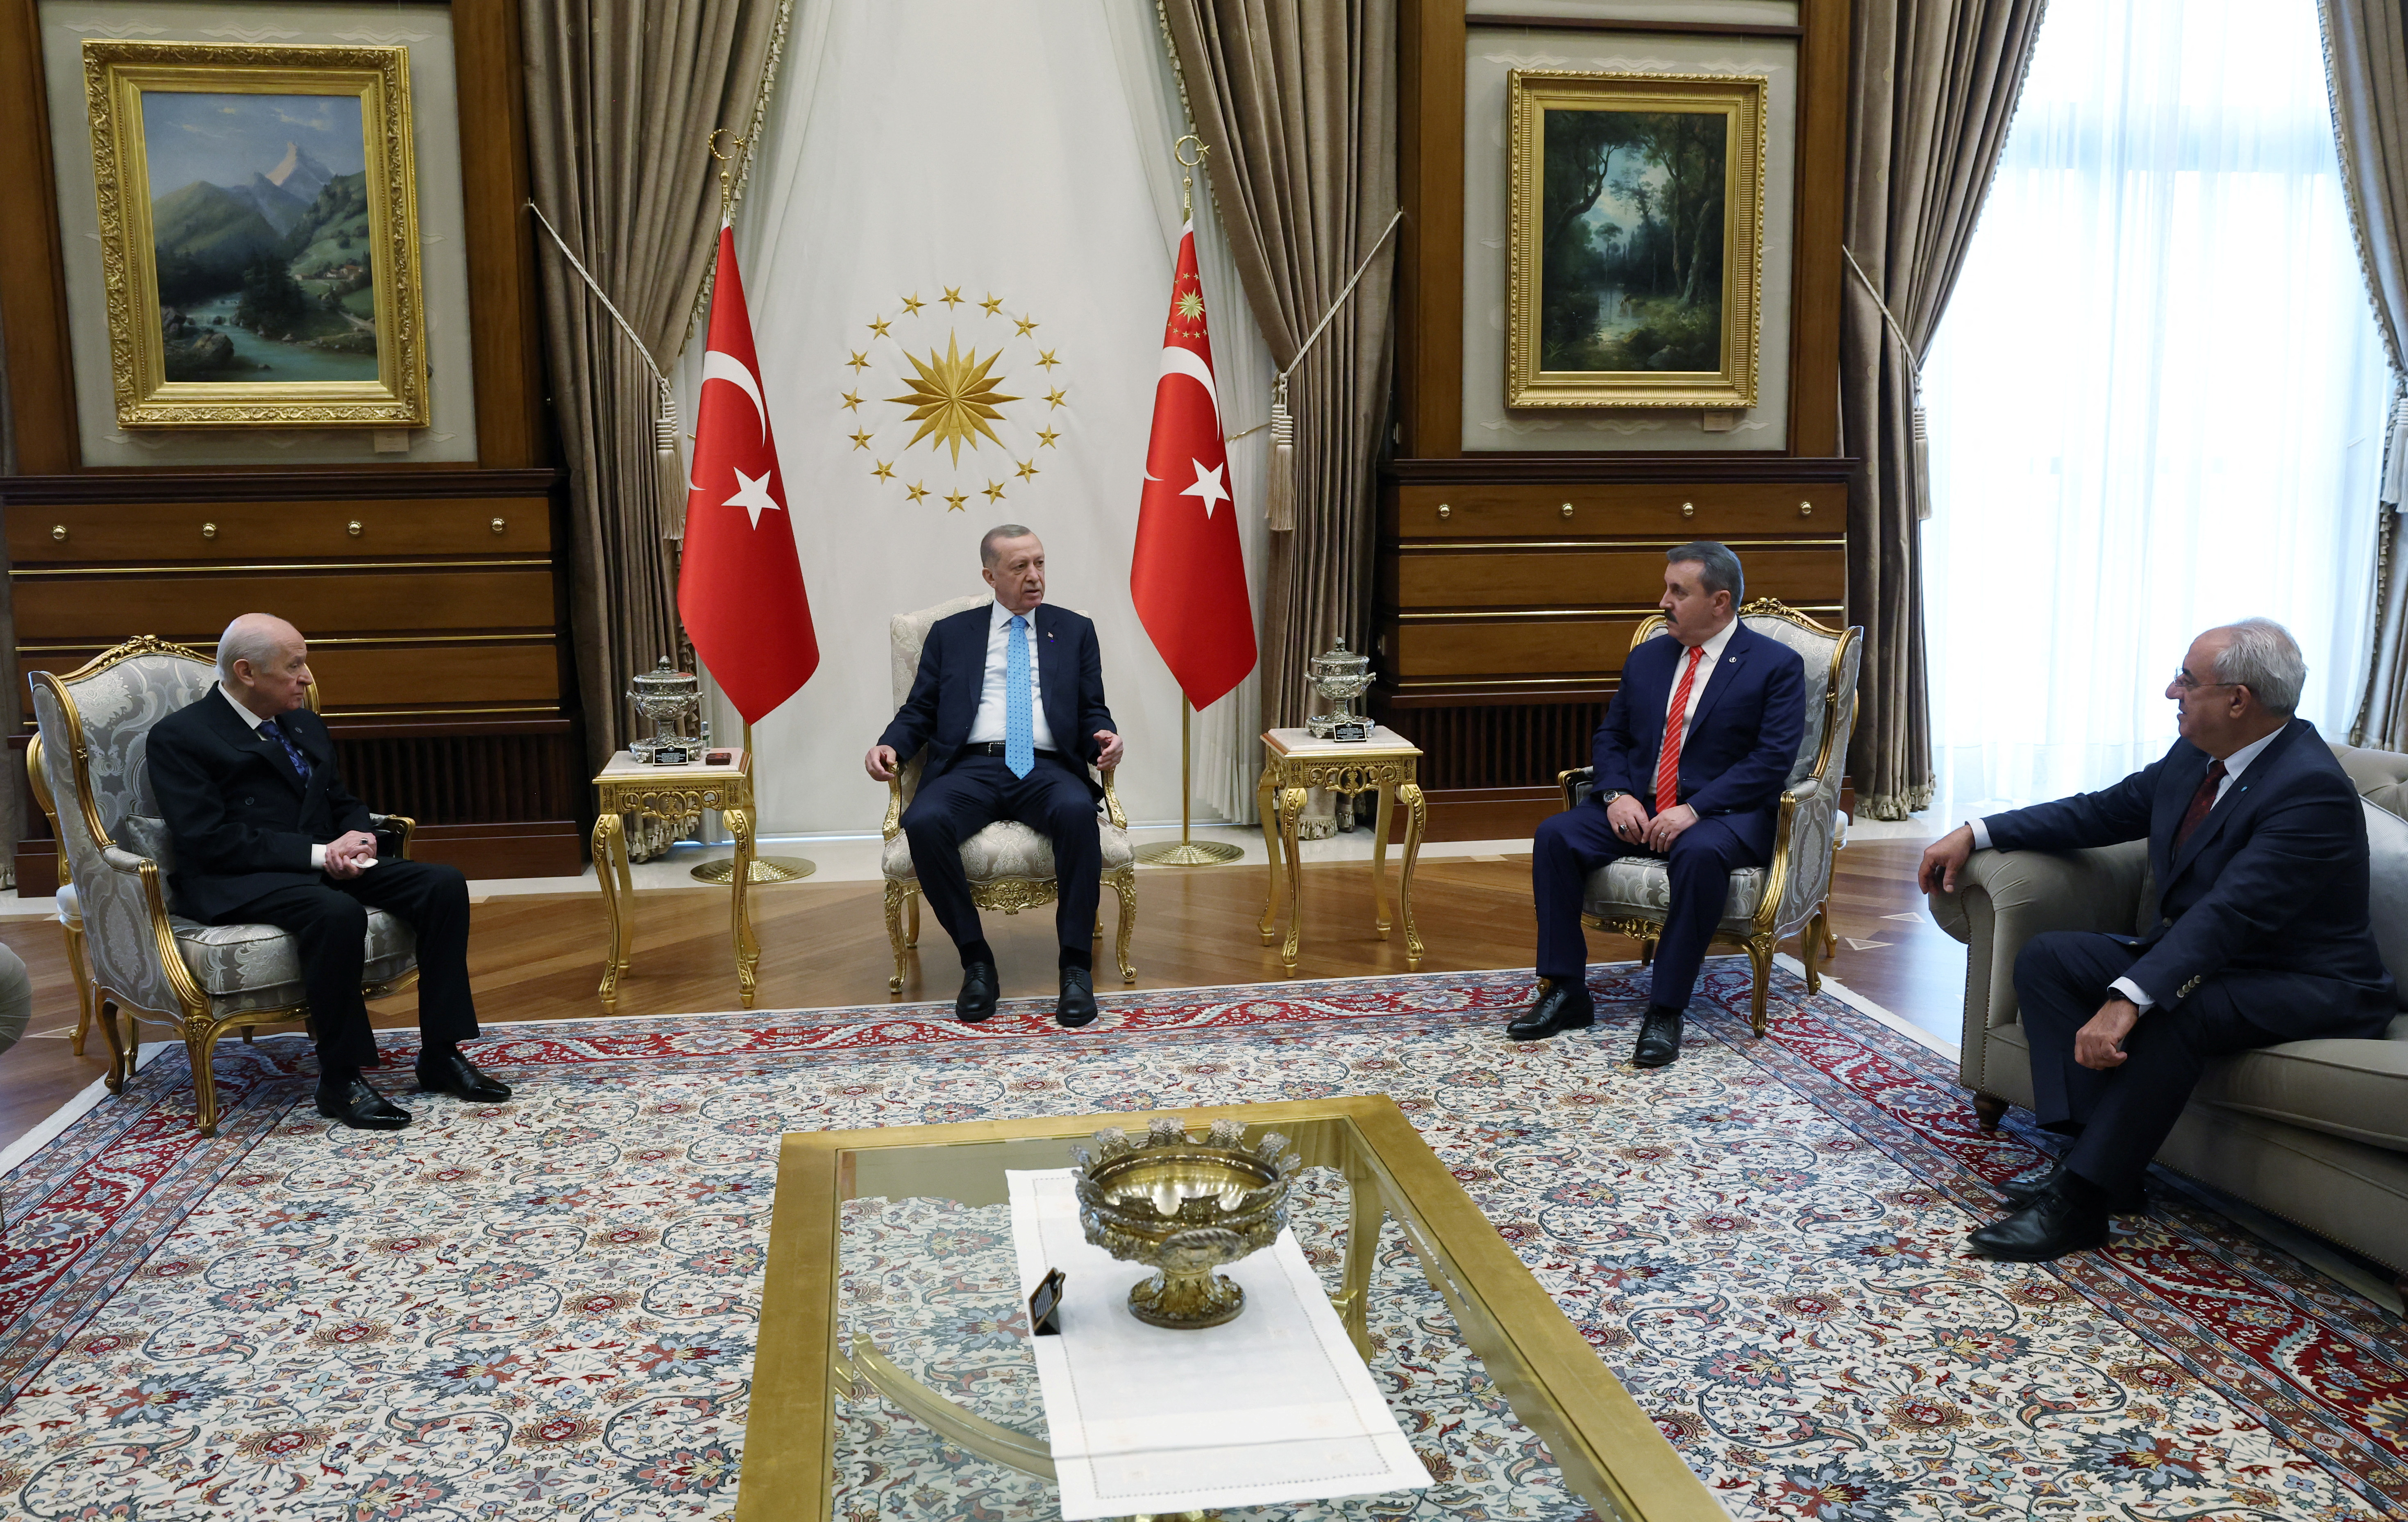 Ο Ερντογάν είπε ότι ο ηγέτης του Ισλαμικού Κράτους σκοτώθηκε στη Συρία από τις τουρκικές υπηρεσίες πληροφοριών